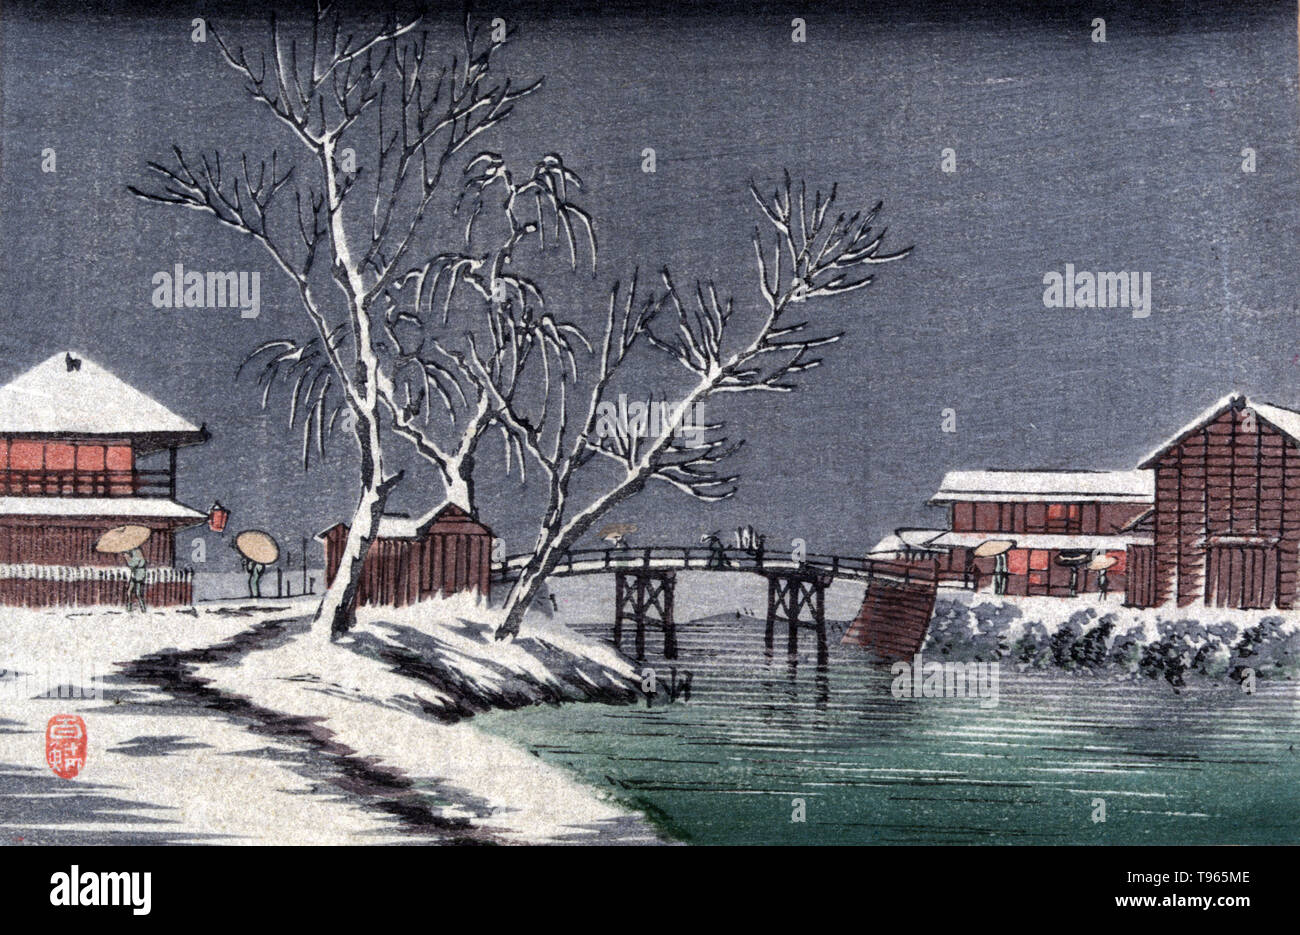 Yuki no horiwari. Canal nella neve. Paesaggio invernale con edifici e un piccolo ponte che attraversa un canale. Ukiyo-e (immagine del mondo fluttuante) è un genere di arte giapponese che fiorì dal XVII attraverso il XIX secolo. Ukiyo-e è stato centrale per formare l'Occidente la percezione dell'arte giapponese nel tardo XIX secolo. Genere del paesaggio è venuto a dominare le percezioni occidentali dell'ukiyo-e. Il paesaggio giapponese differiva dalla tradizione occidentale in quanto si basava più pesantemente sull'immaginazione, composizione e atmosfera che il rigoroso rispetto della natura. Nessun artista accreditato, circa 1900-20. Foto Stock